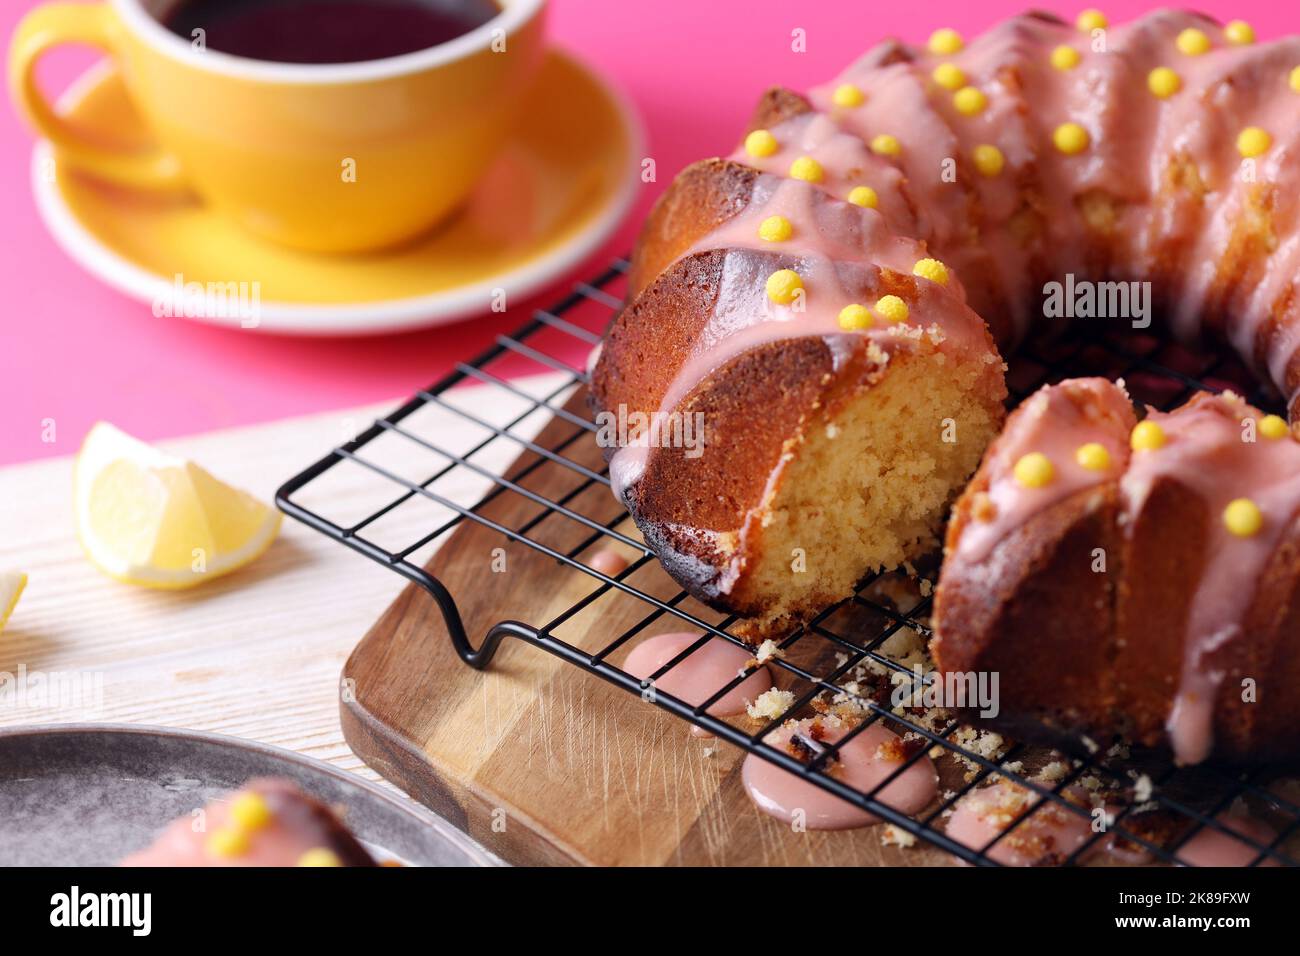 gâteau d'anniversaire brillant. délicieux gâteau au citron avec glaçage rose sur fond rose Banque D'Images